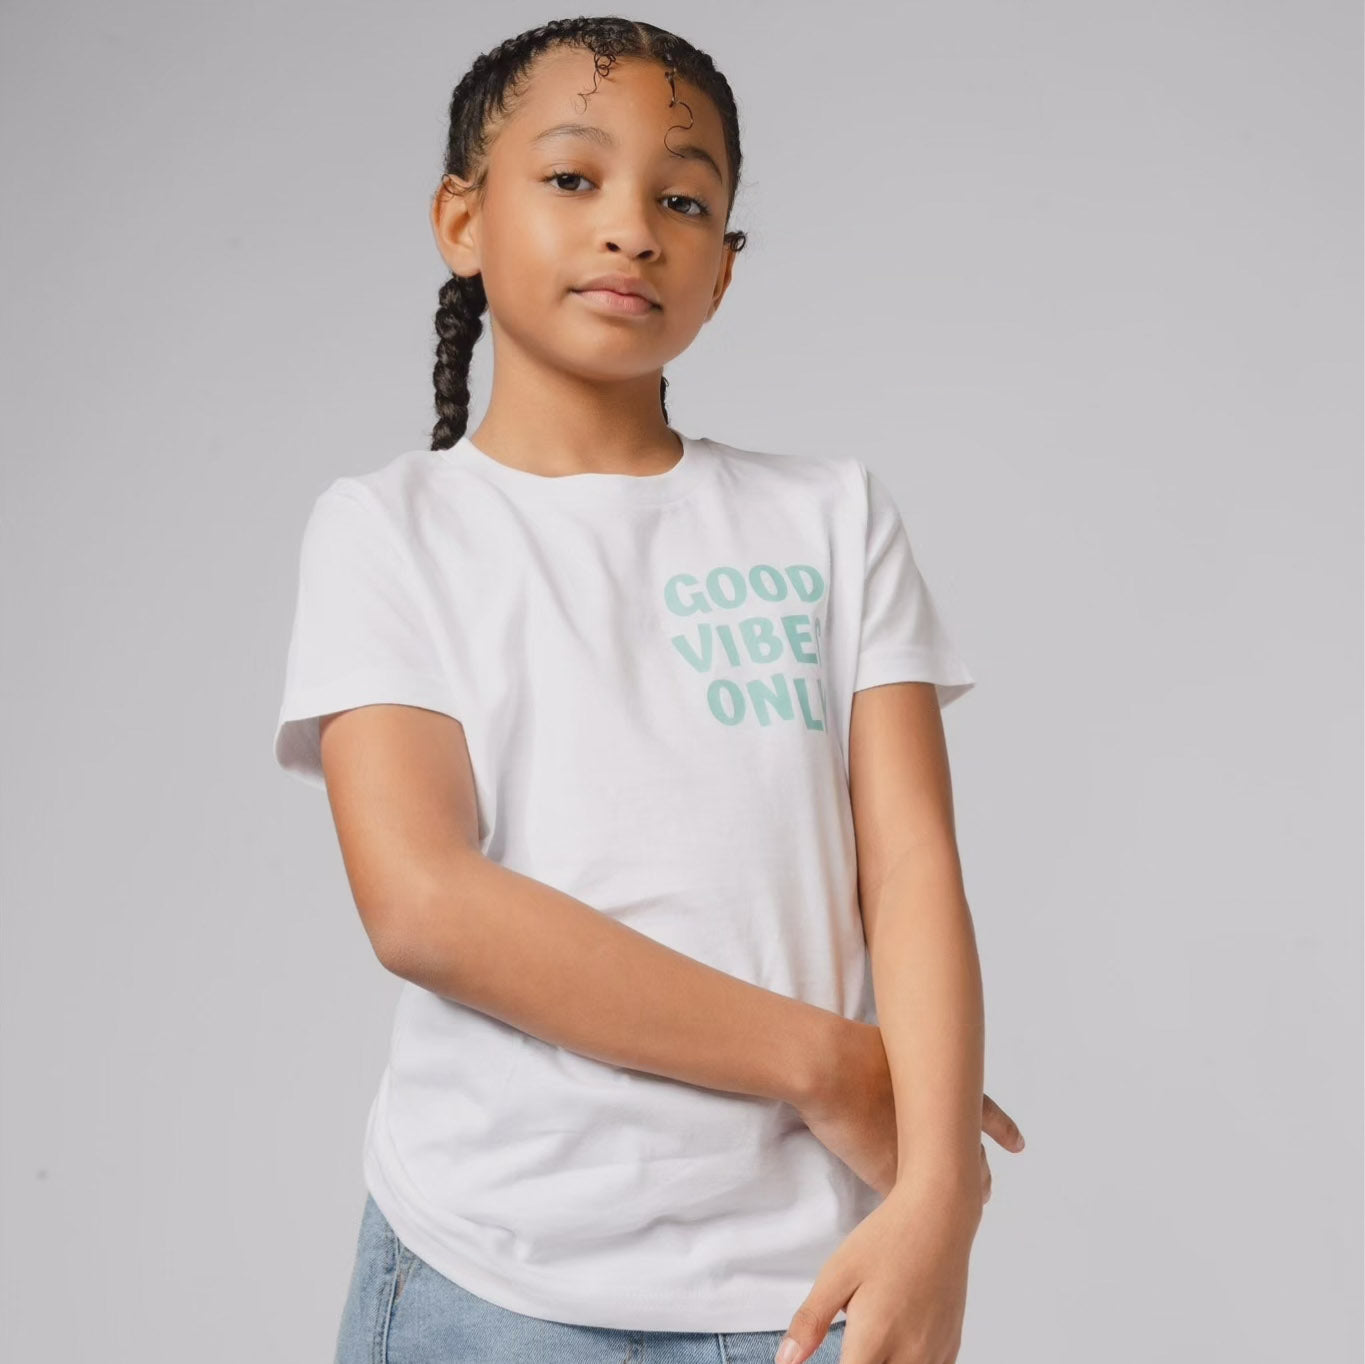 Good Vibes Only Kids & Teens Short Sleeve T-Shirt